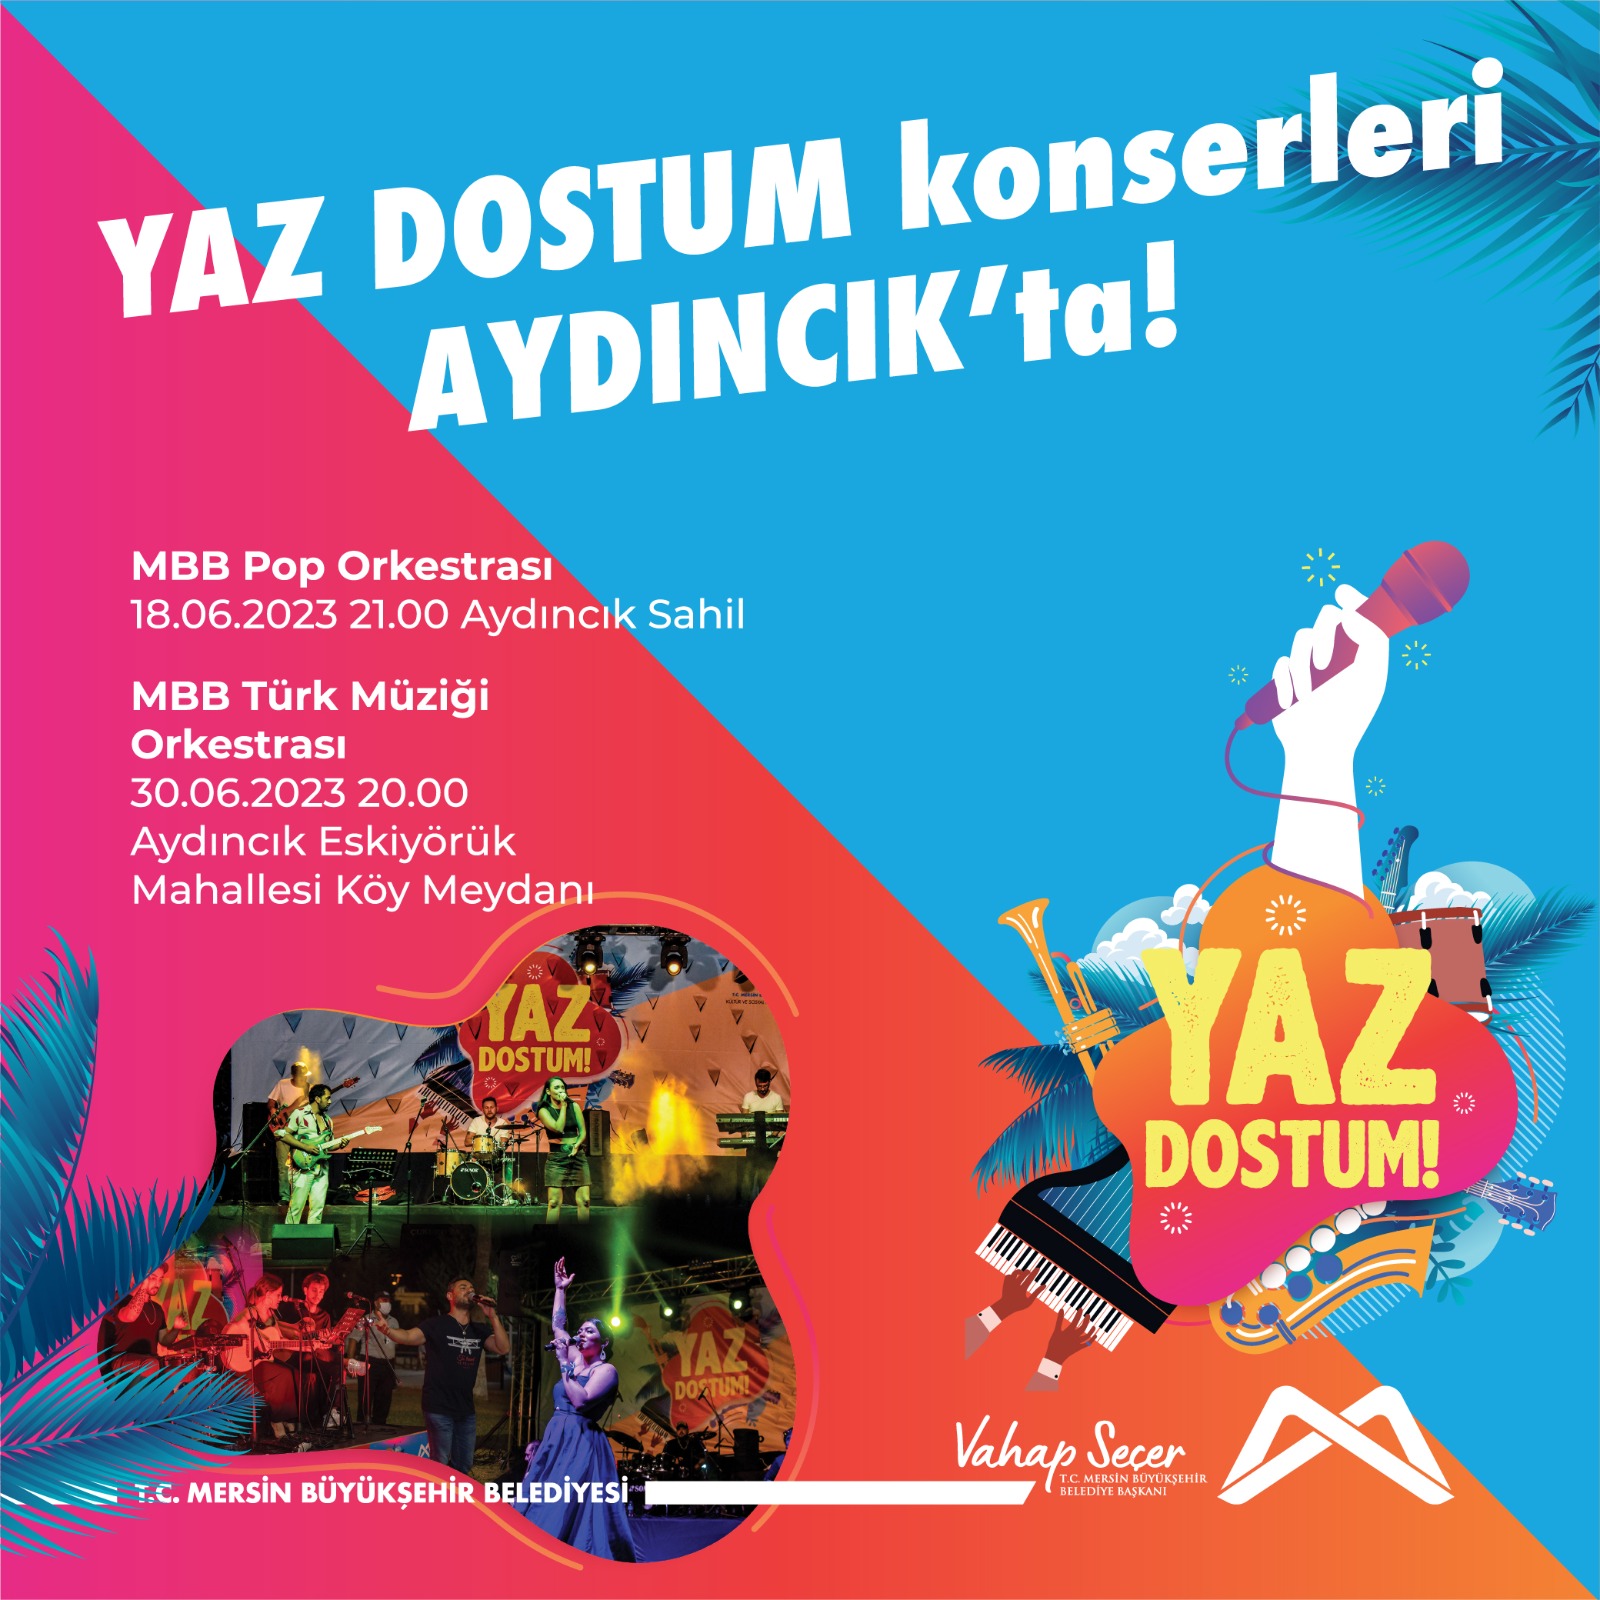 YAZ DOSTUM konserleri Aydıncık'ta!